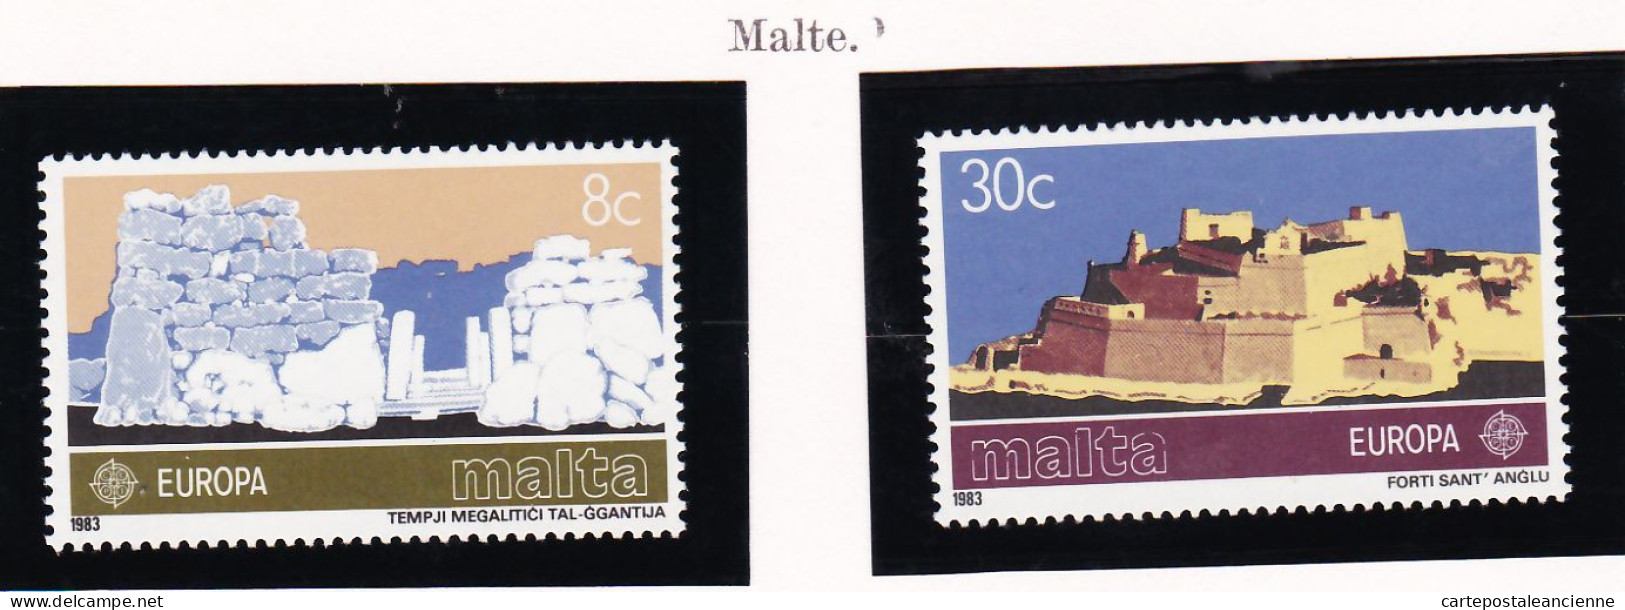 28265 / CEPT EUROPA 1983 MALTA Malte Yvert-Tellier N° 668 / 669  MICHEL N° 680 / 681  ** MNH C.E.P.T - 1983